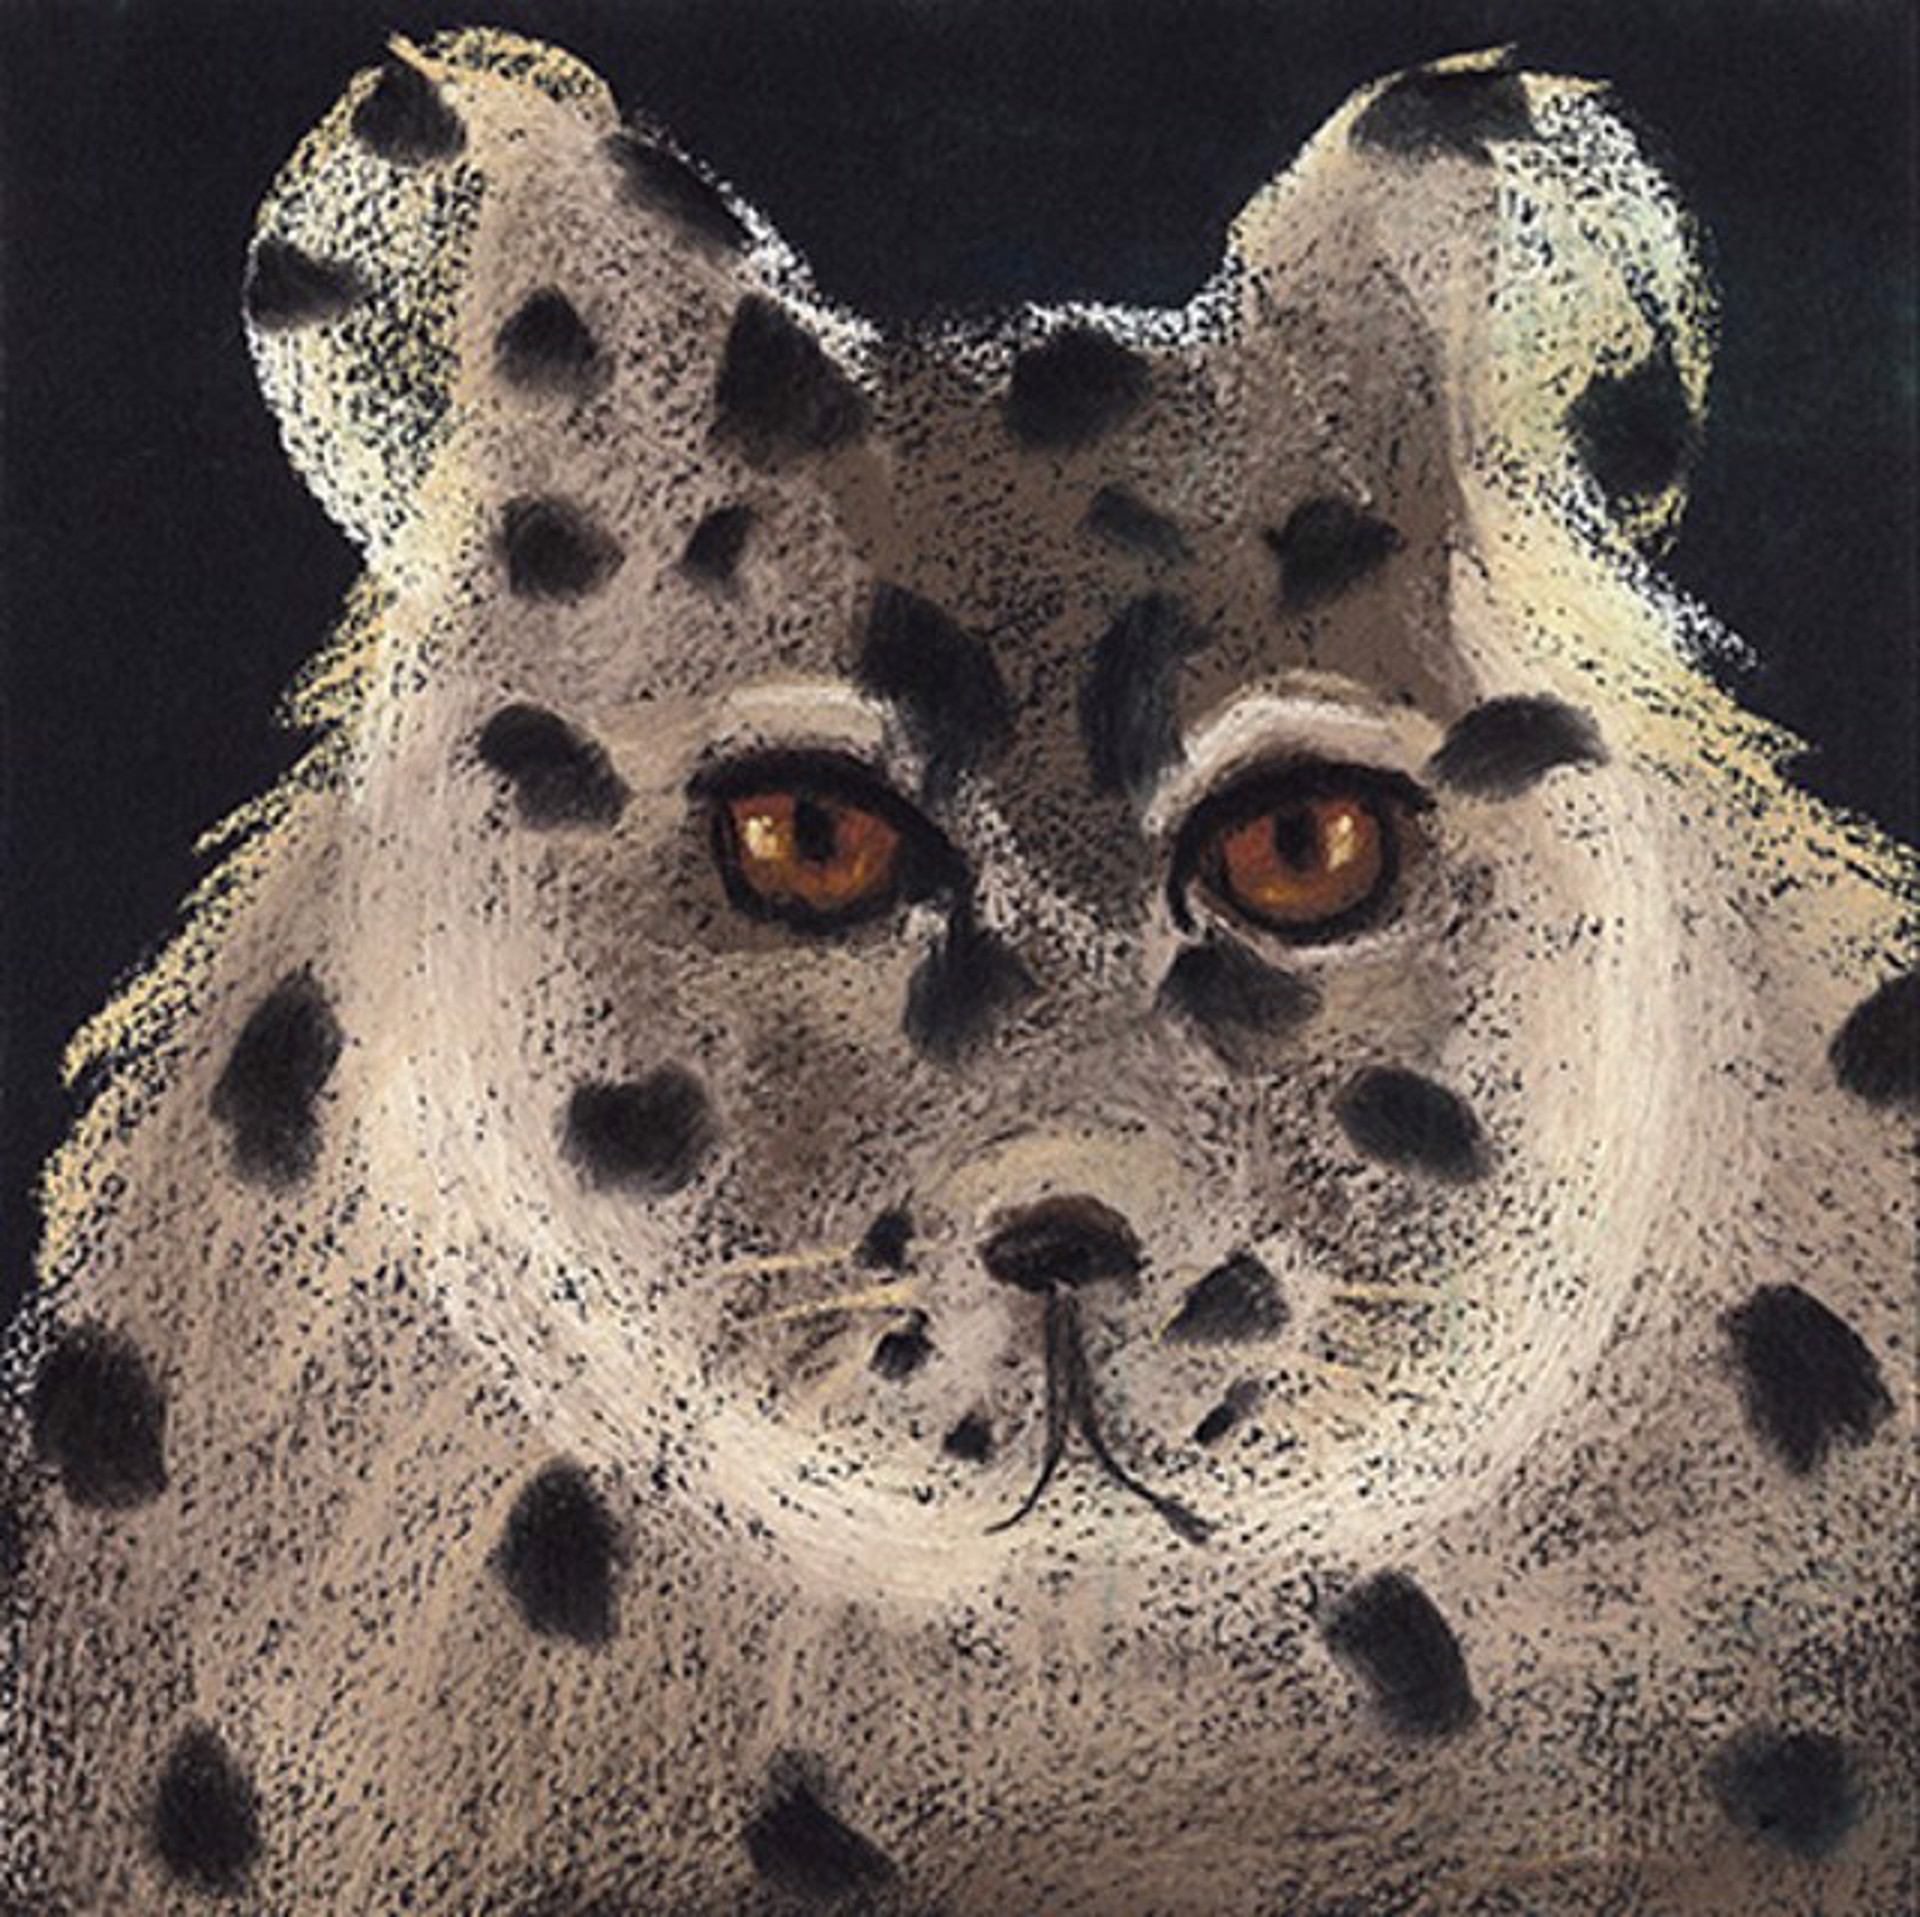 Snow Leopard 38/250 by Carole LaRoche